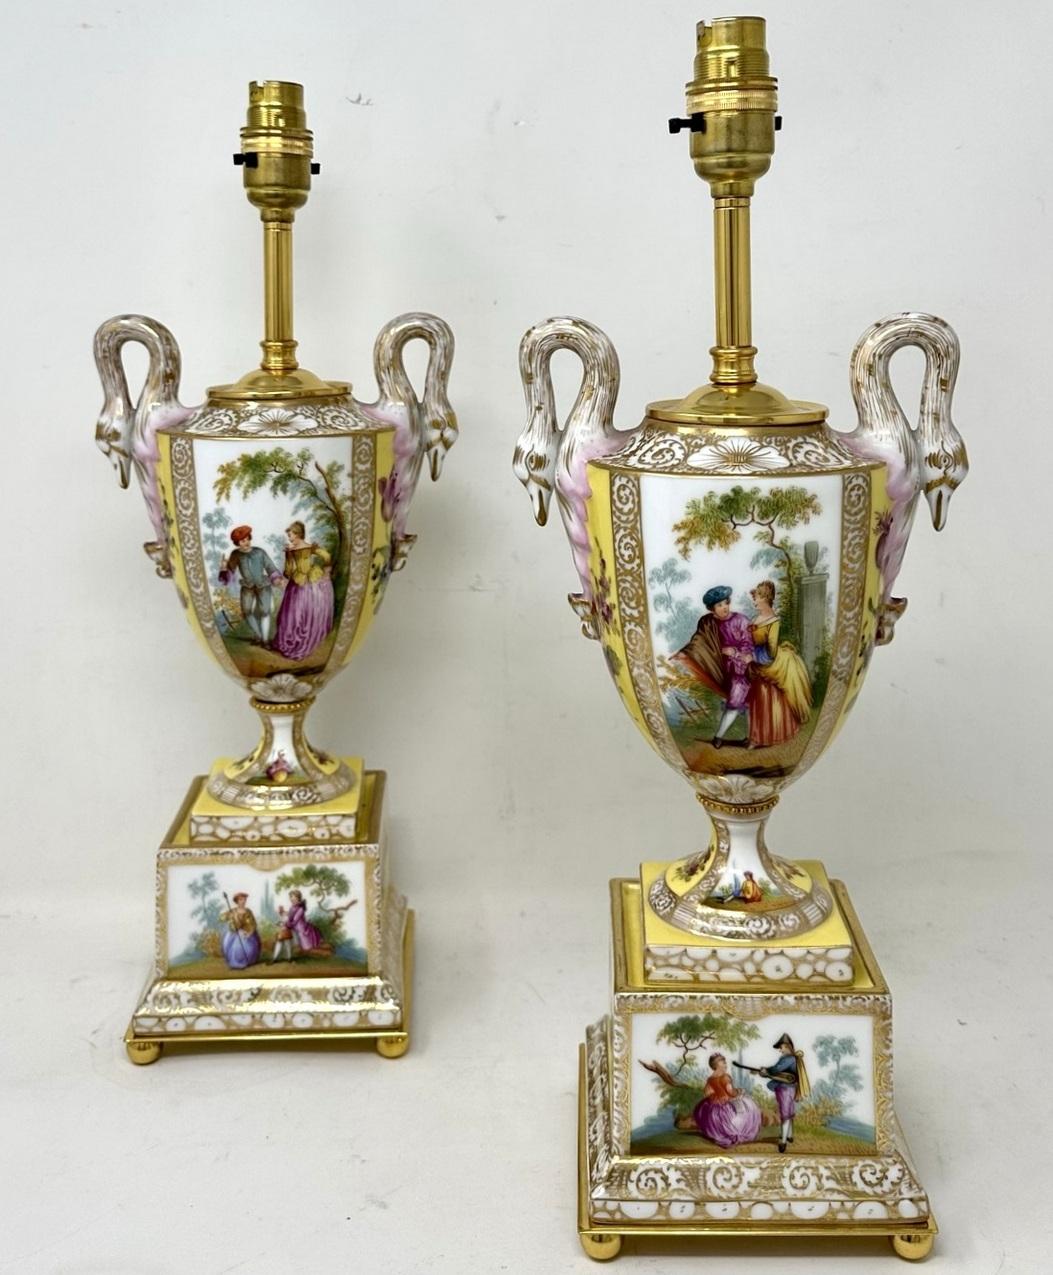 Ein imposantes und atemberaubendes Paar österreichischer handdekorierter, blassgelb grundierter Porzellan- und vergoldeter Zwillings-Schwanenhals-Schneckengriff-Tisch- oder Mantel-Urnen in traditioneller Form, jetzt umgewandelt in ein Paar